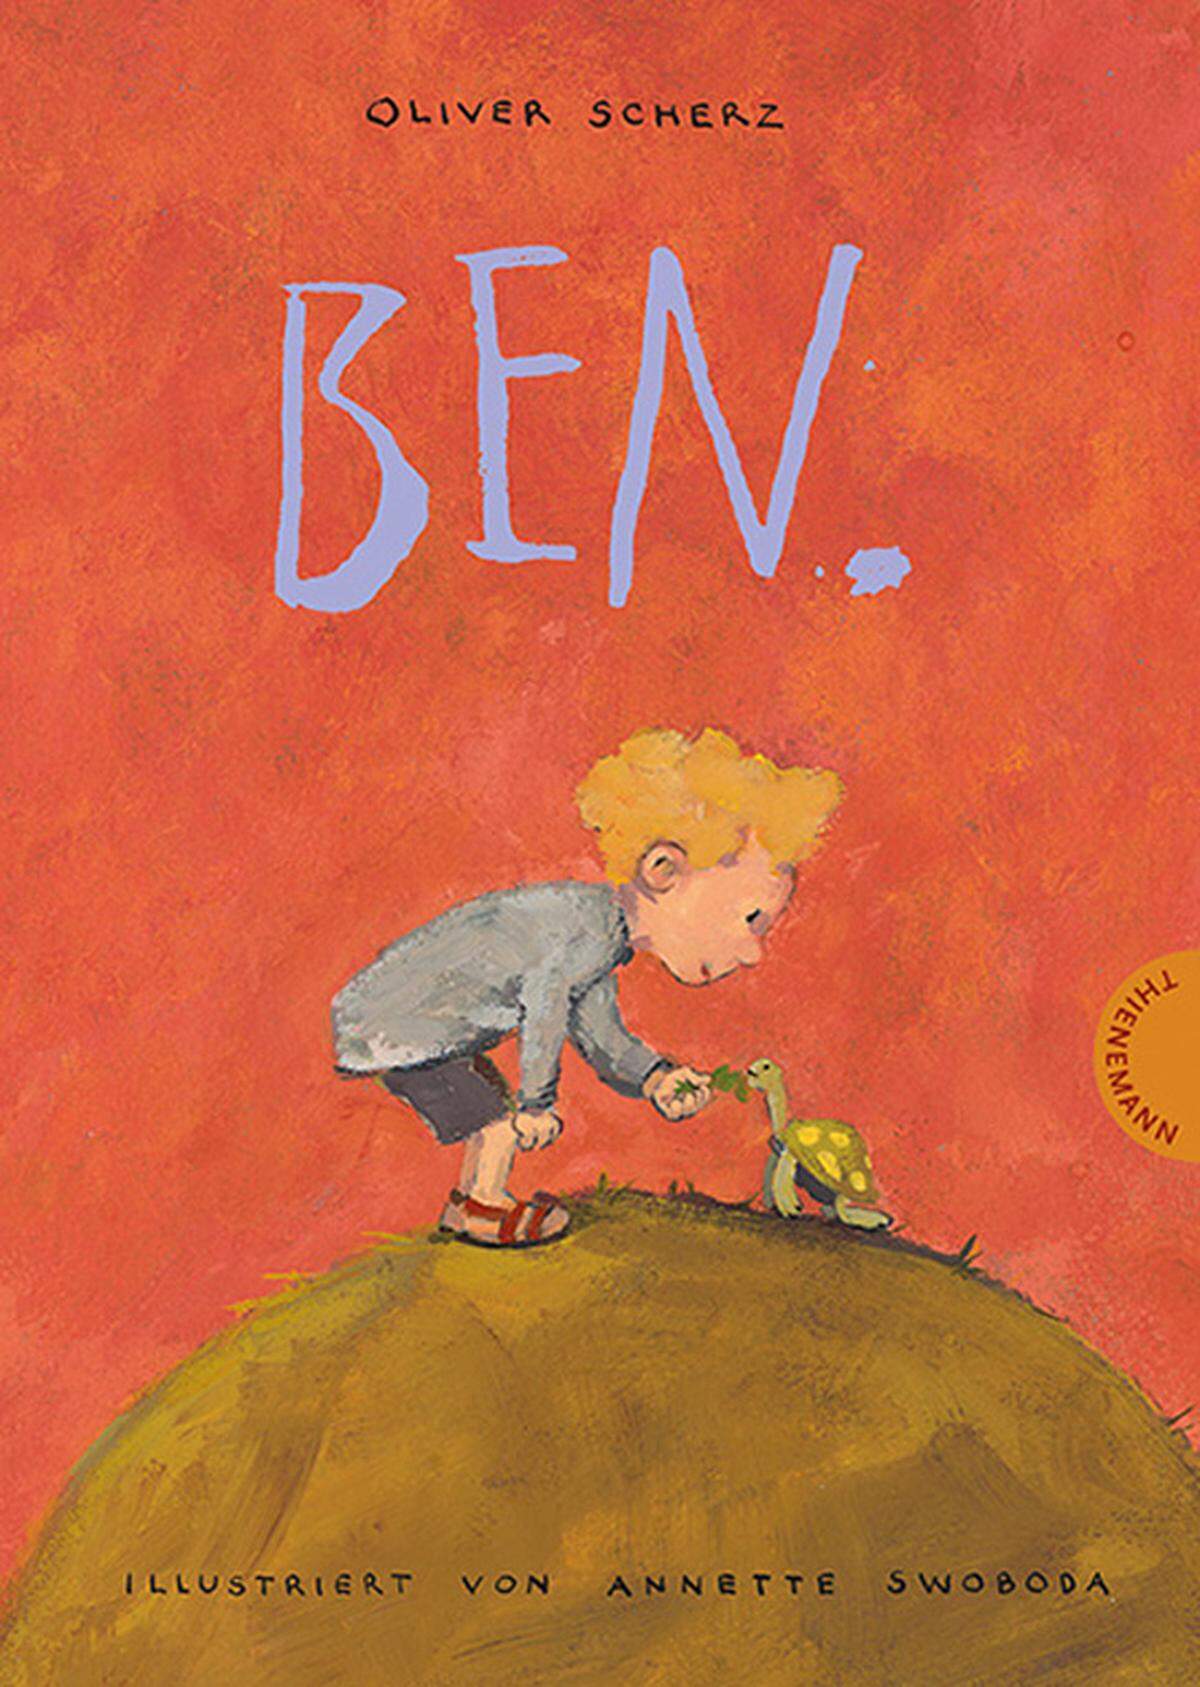 Ben ist ein ganz normaler sechsjähriger Bub. Manchmal ist er mutig, isst schwarze Muscheln, duscht "fastkalt" und fischt in Nachbars Teich. Manchmal ist er ein Angsthase und weiß, dass sein großer Bruder ihn auslachen wird. Und manchmal ist er ein Held. Der deutsche Autor Oliver Scherz lässt Ben (so auch der Name des Buches) mit seiner Schildkröte auf 103 Seiten kleine und größere Abenteuer erleben. Ein liebenswert ehrliches Buch in einfacher Sprache, erschienen bei Thienemann. Alter: ab 5 Jahren.